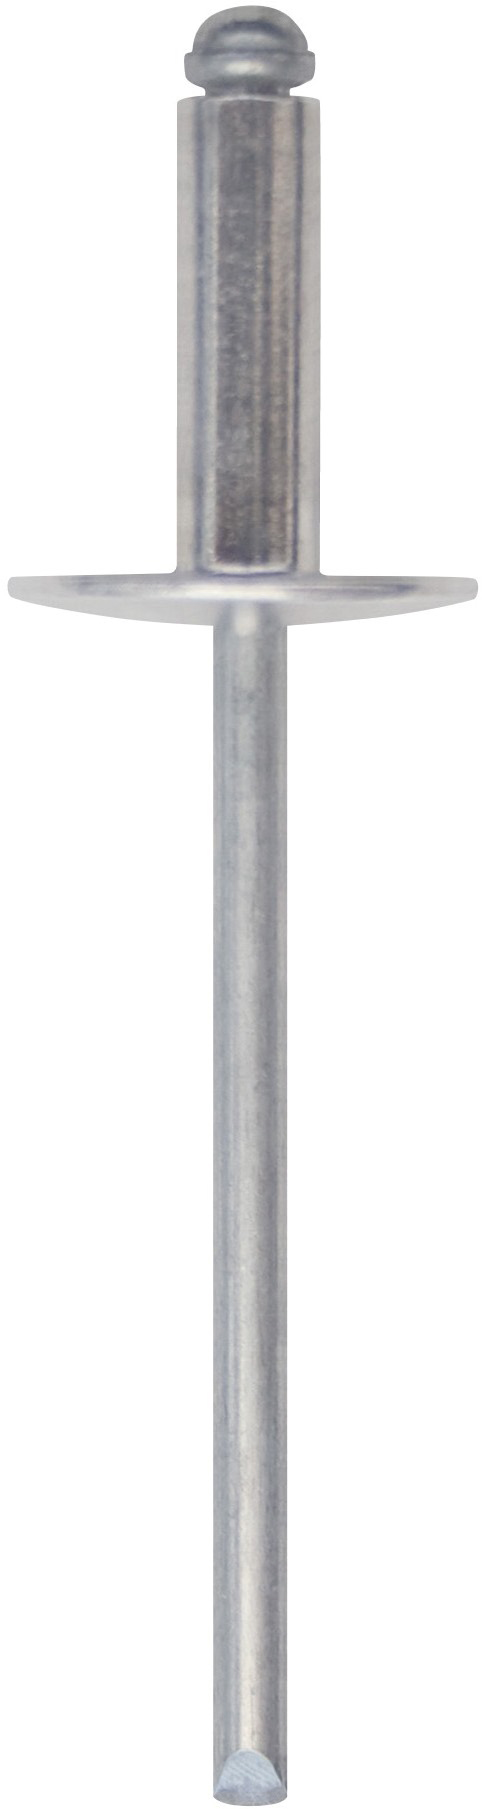 Cod. 0300104000700 - RIVEX Rivetto in alluminio con testa larga